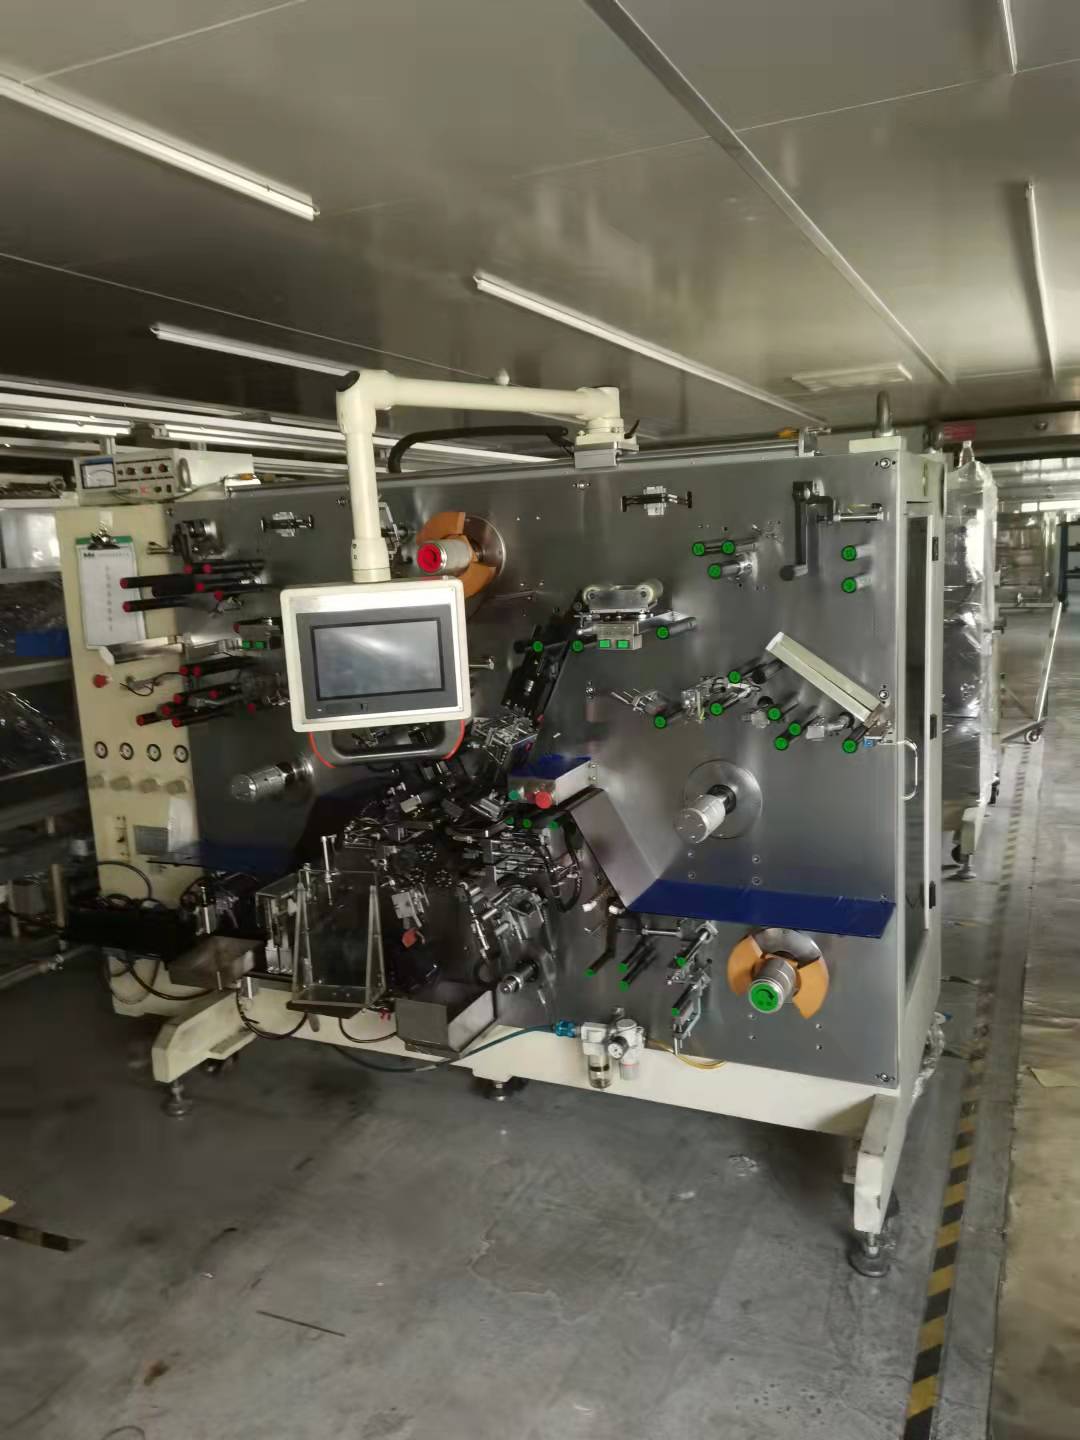 宁波分切机模切机CCD极片在线检测设备锂电池涂布机厂家电话